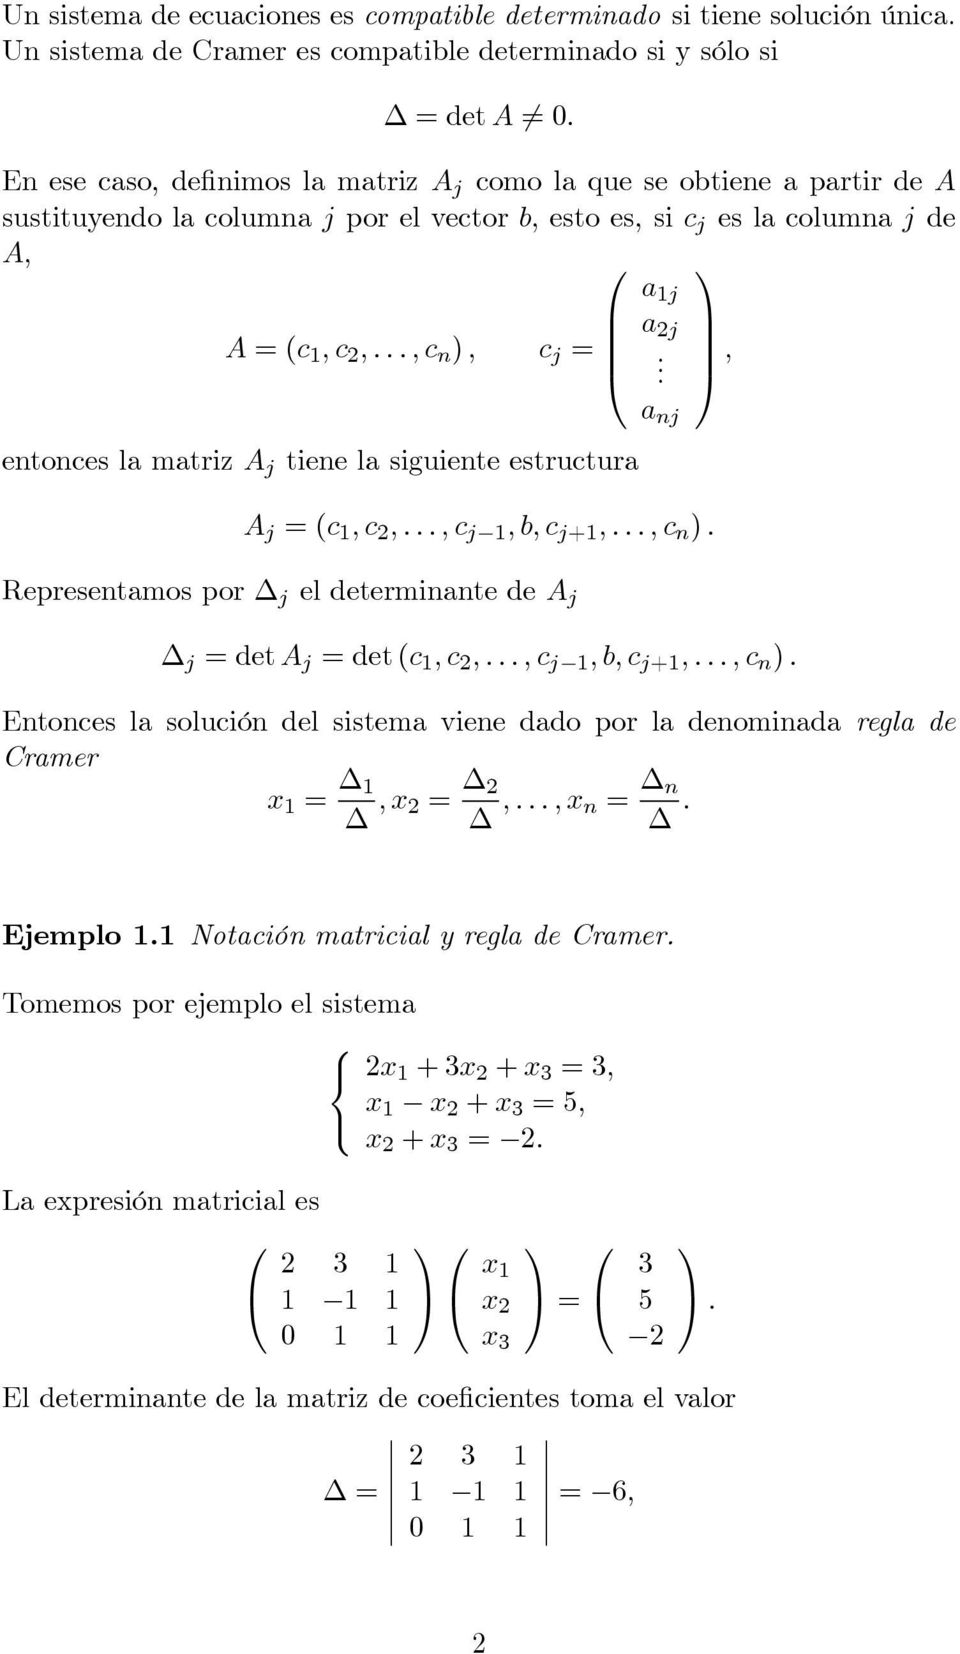 , a nj entonces la matriz A j tiene la siguiente estructura A j =(c 1,c 2,...,c j 1,b,c j+1,...,c n ). Representamos por j el determinante de A j j =deta j =det(c 1,c 2,...,c j 1,b,c j+1,...,c n ). Entonces la solución del sistema viene dado por la denominada regla de Cramer x 1 = 1,x 2 = 2,.